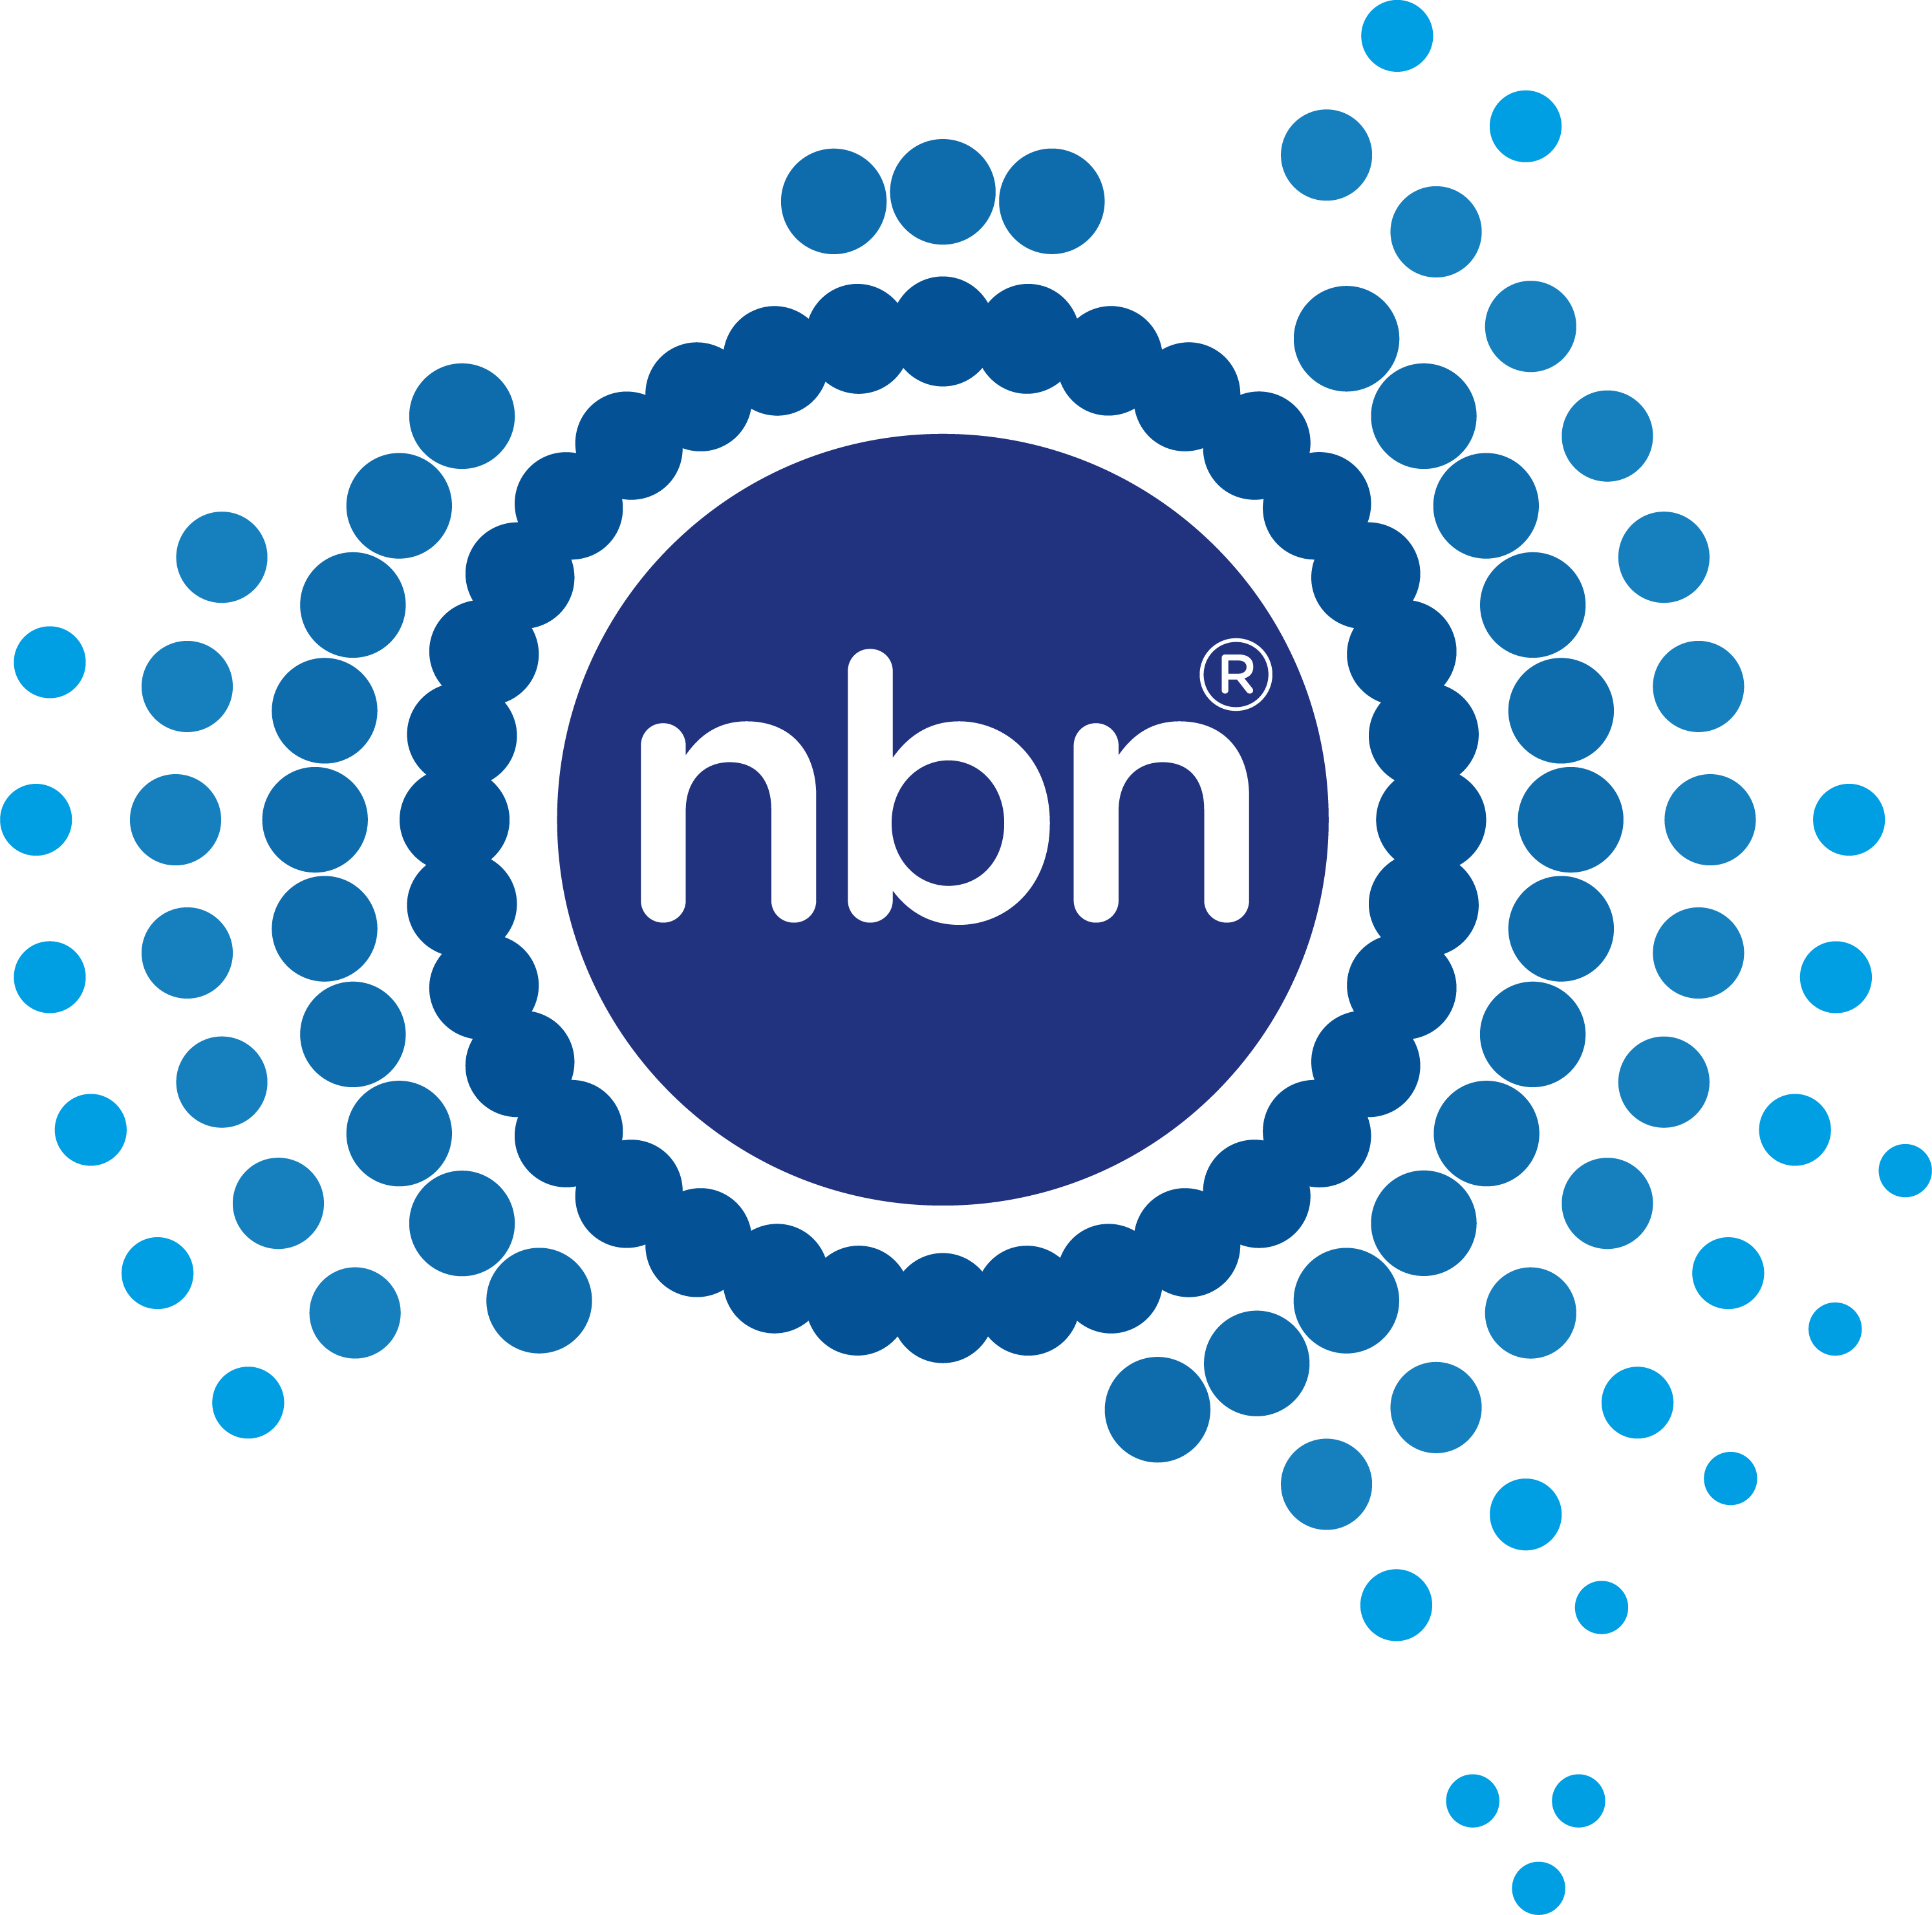 NBNCo Ltd